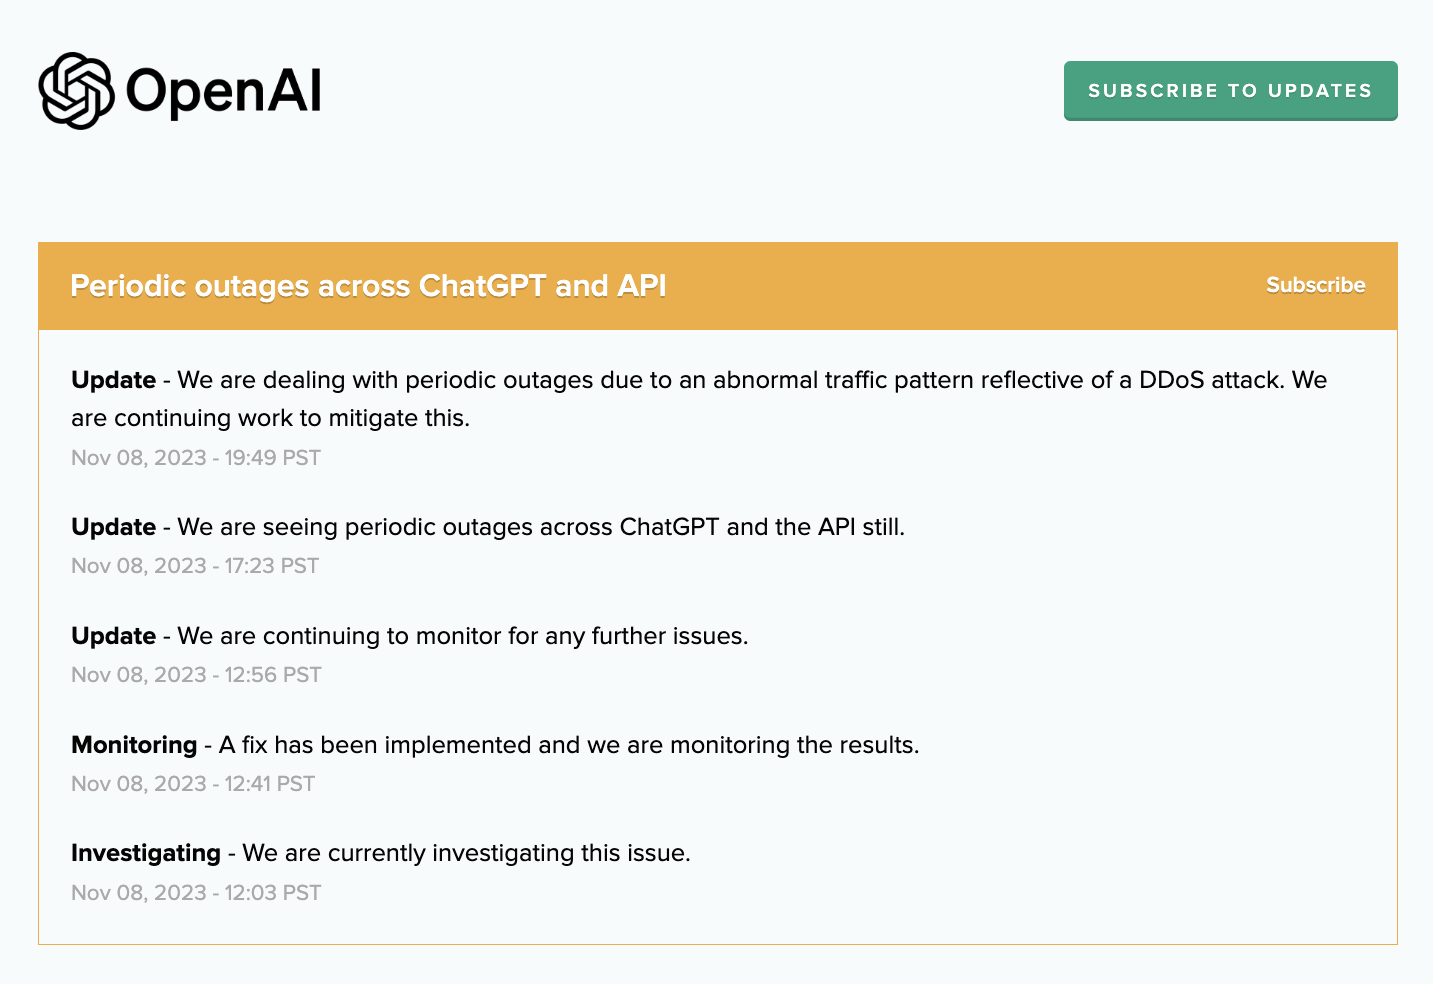 OpenAI behebt periodische ChatGPT- und API-Ausfälle, die durch DDoS-Angriffe verursacht werden